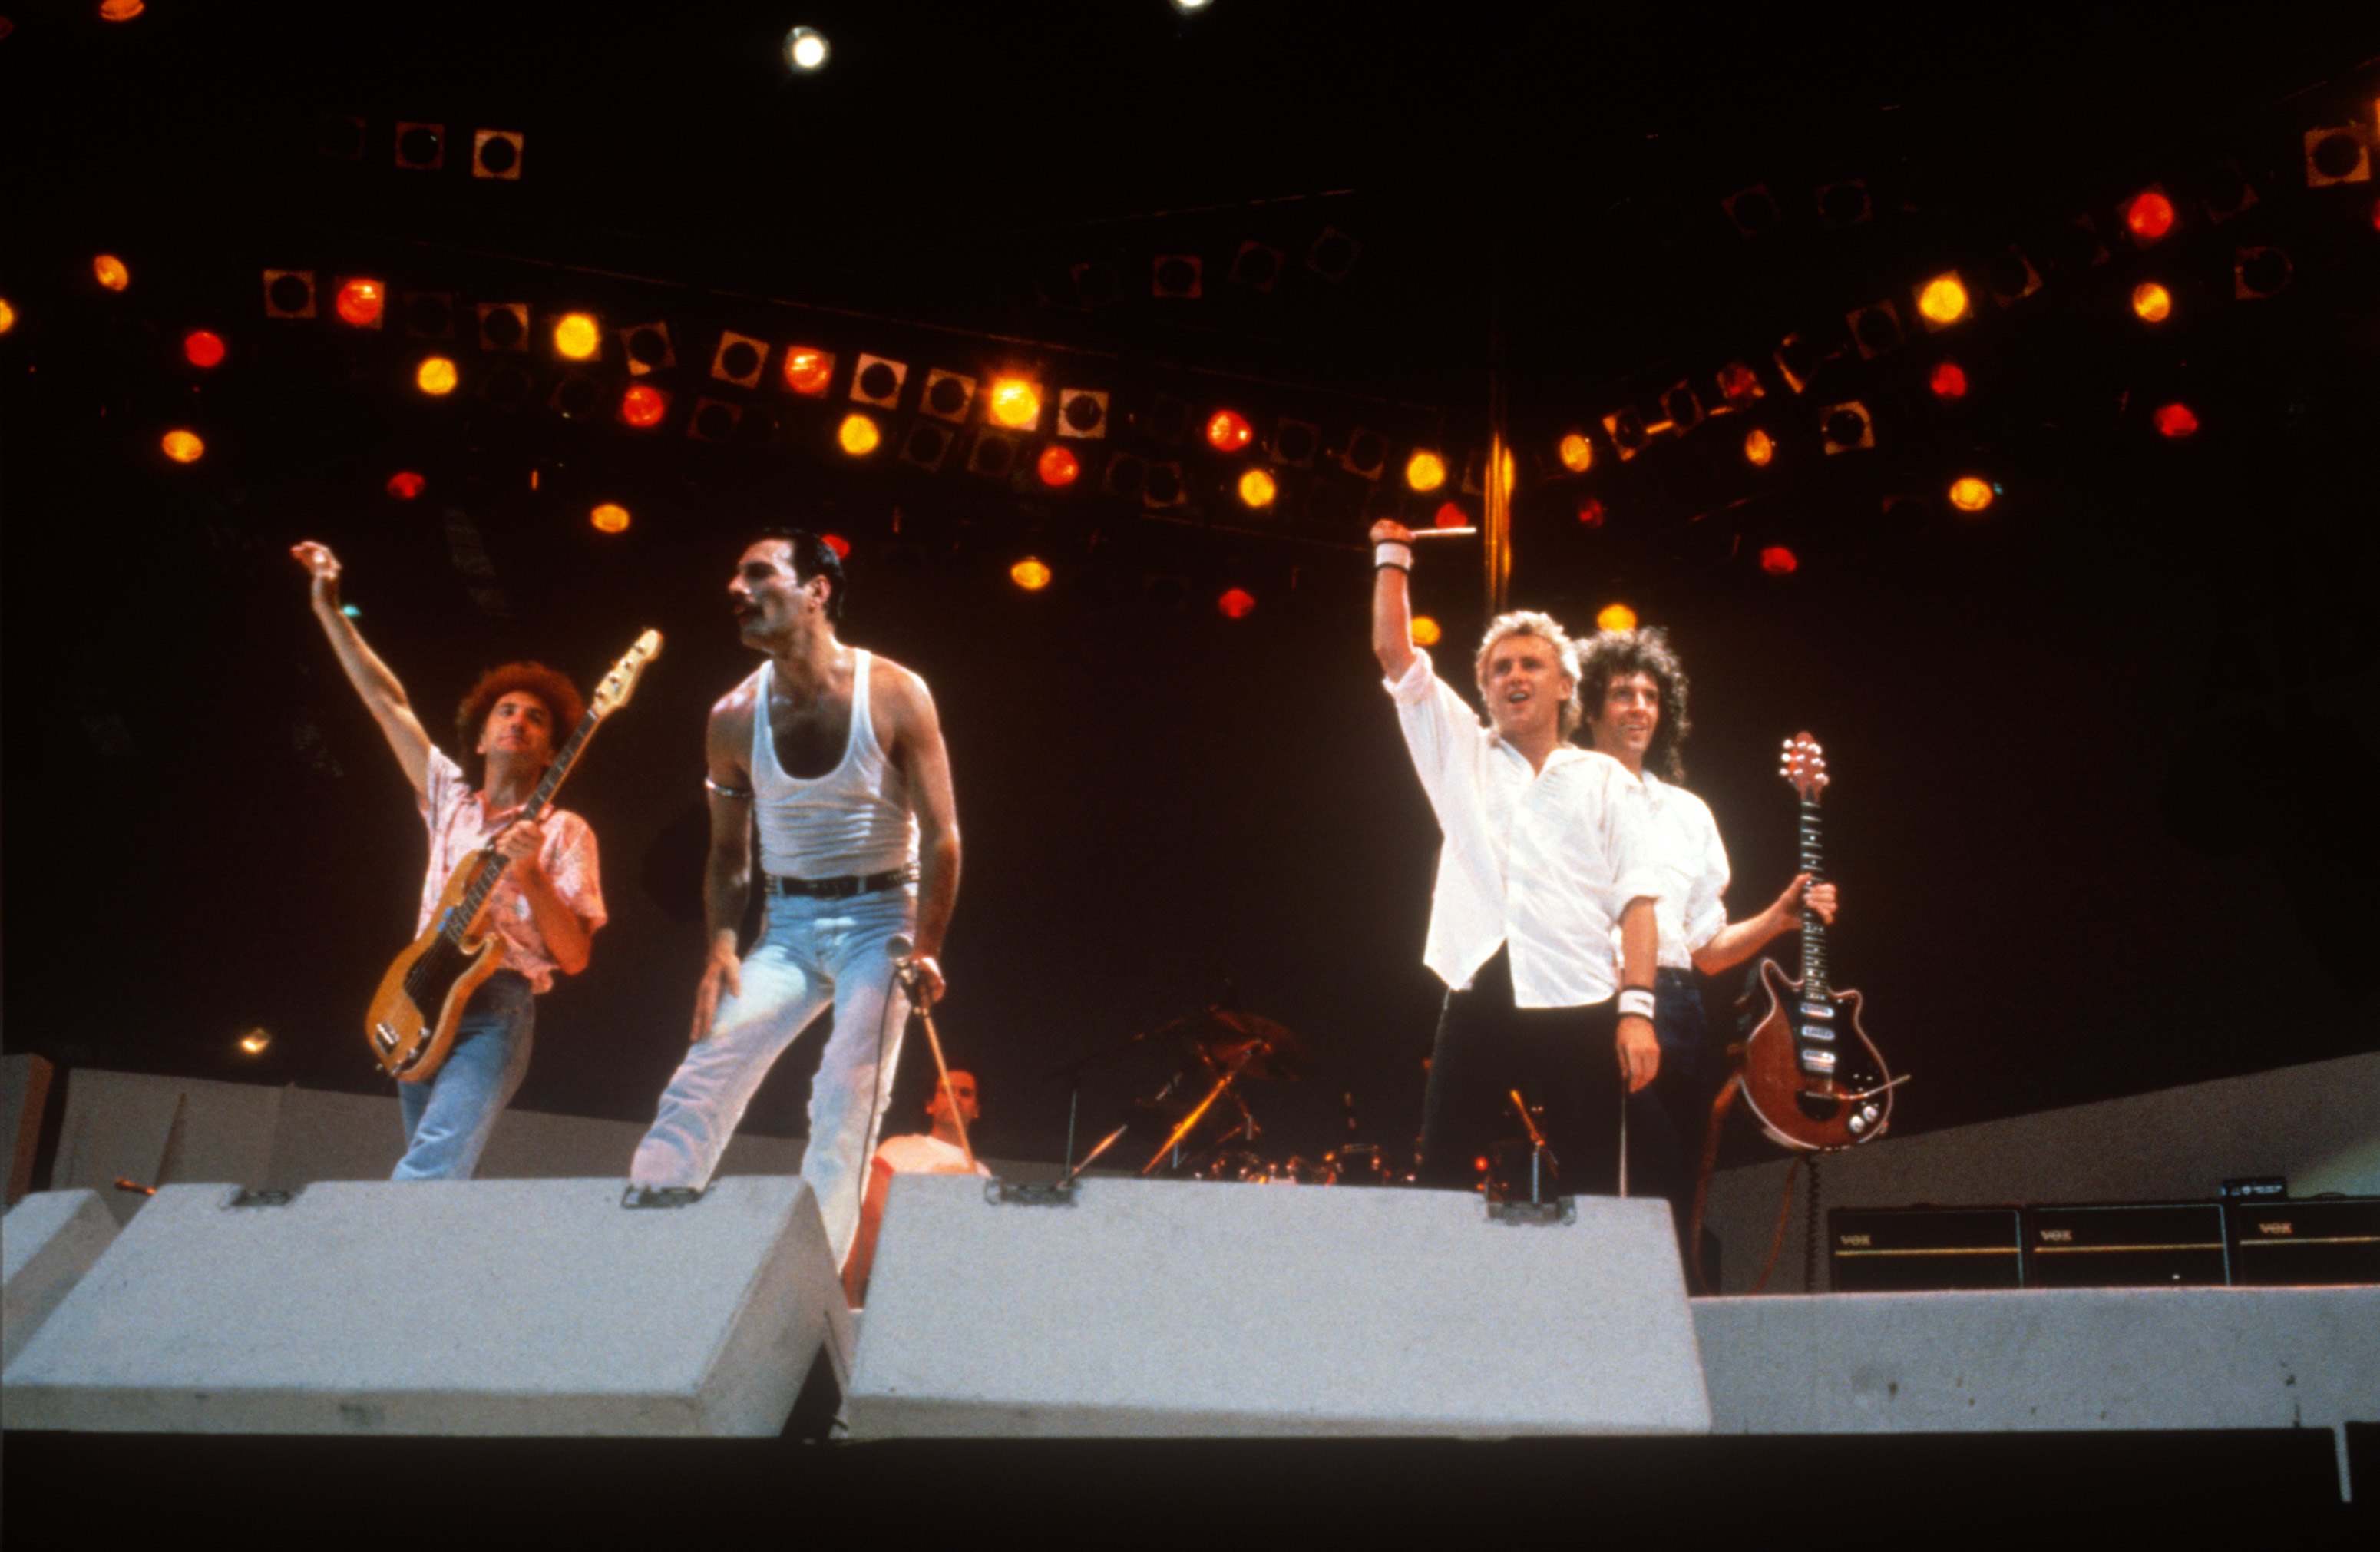 Концерт квин на стадионе. Концерт Live Aid 1985 Queen. Фредди Меркьюри на концерте Live Aid 1985. Группа Квин концерт 1985. Выступление куин на Уэмбли 1985.